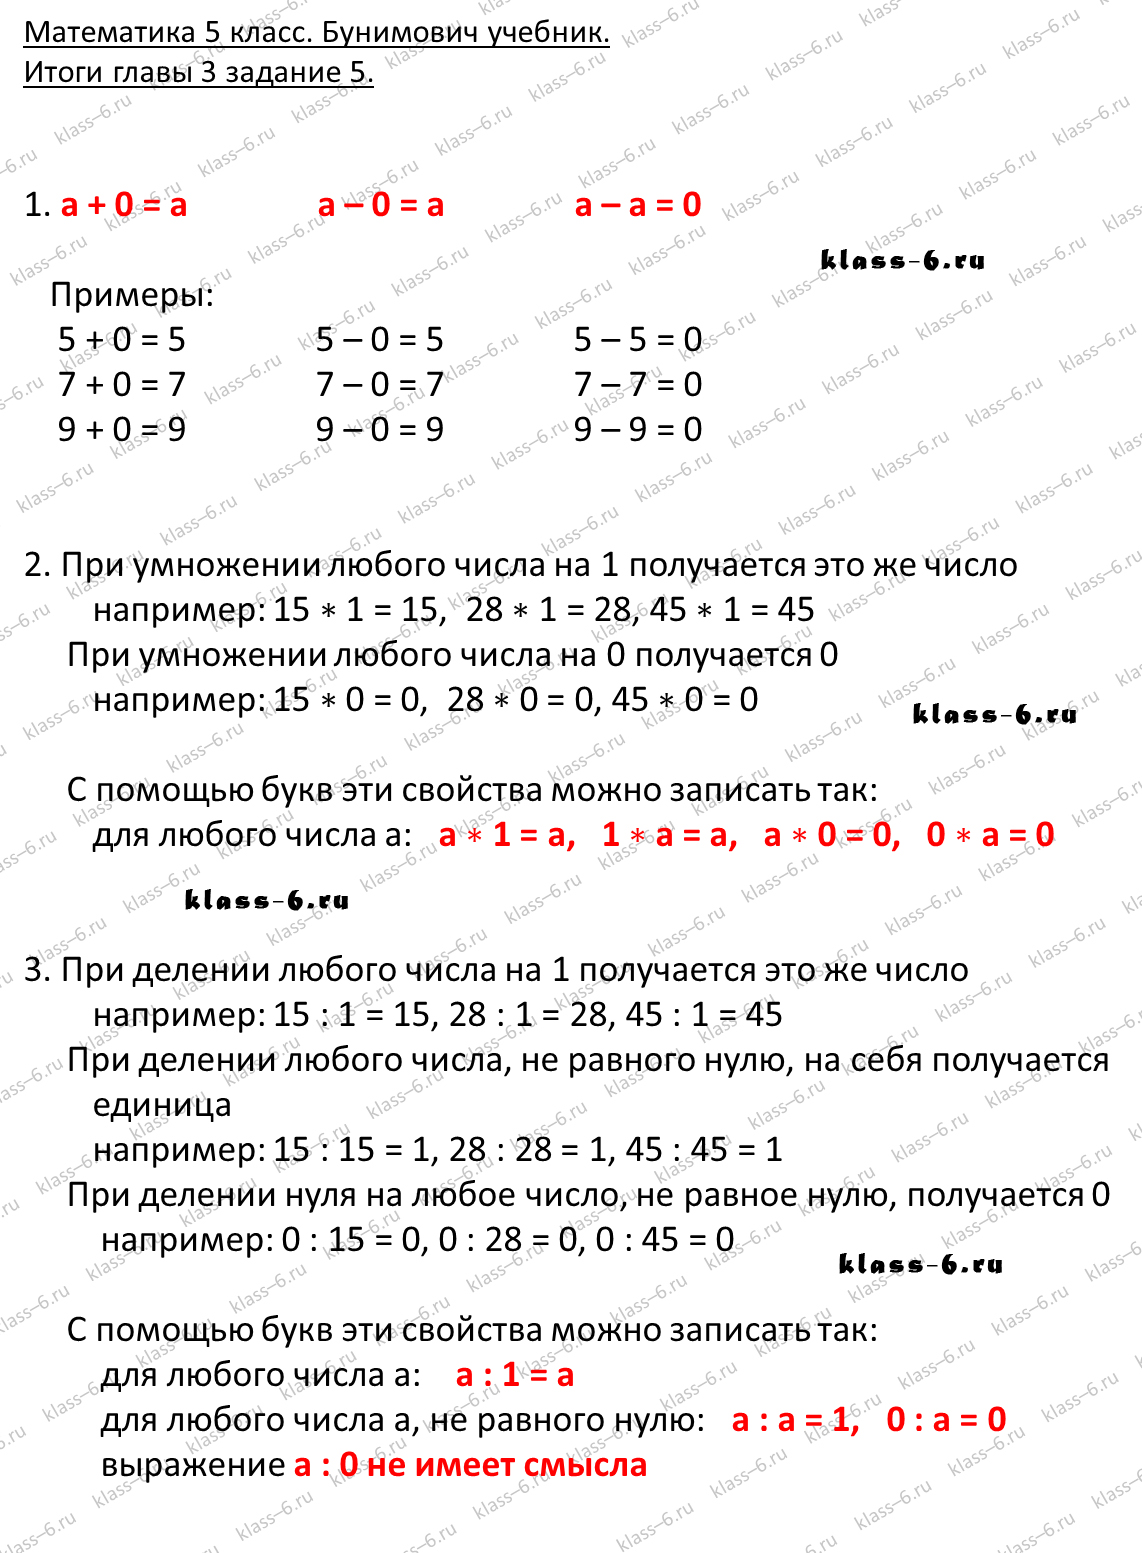 решебник и гдз по математике учебник Бунимович 5 класс итоги главы 3-5